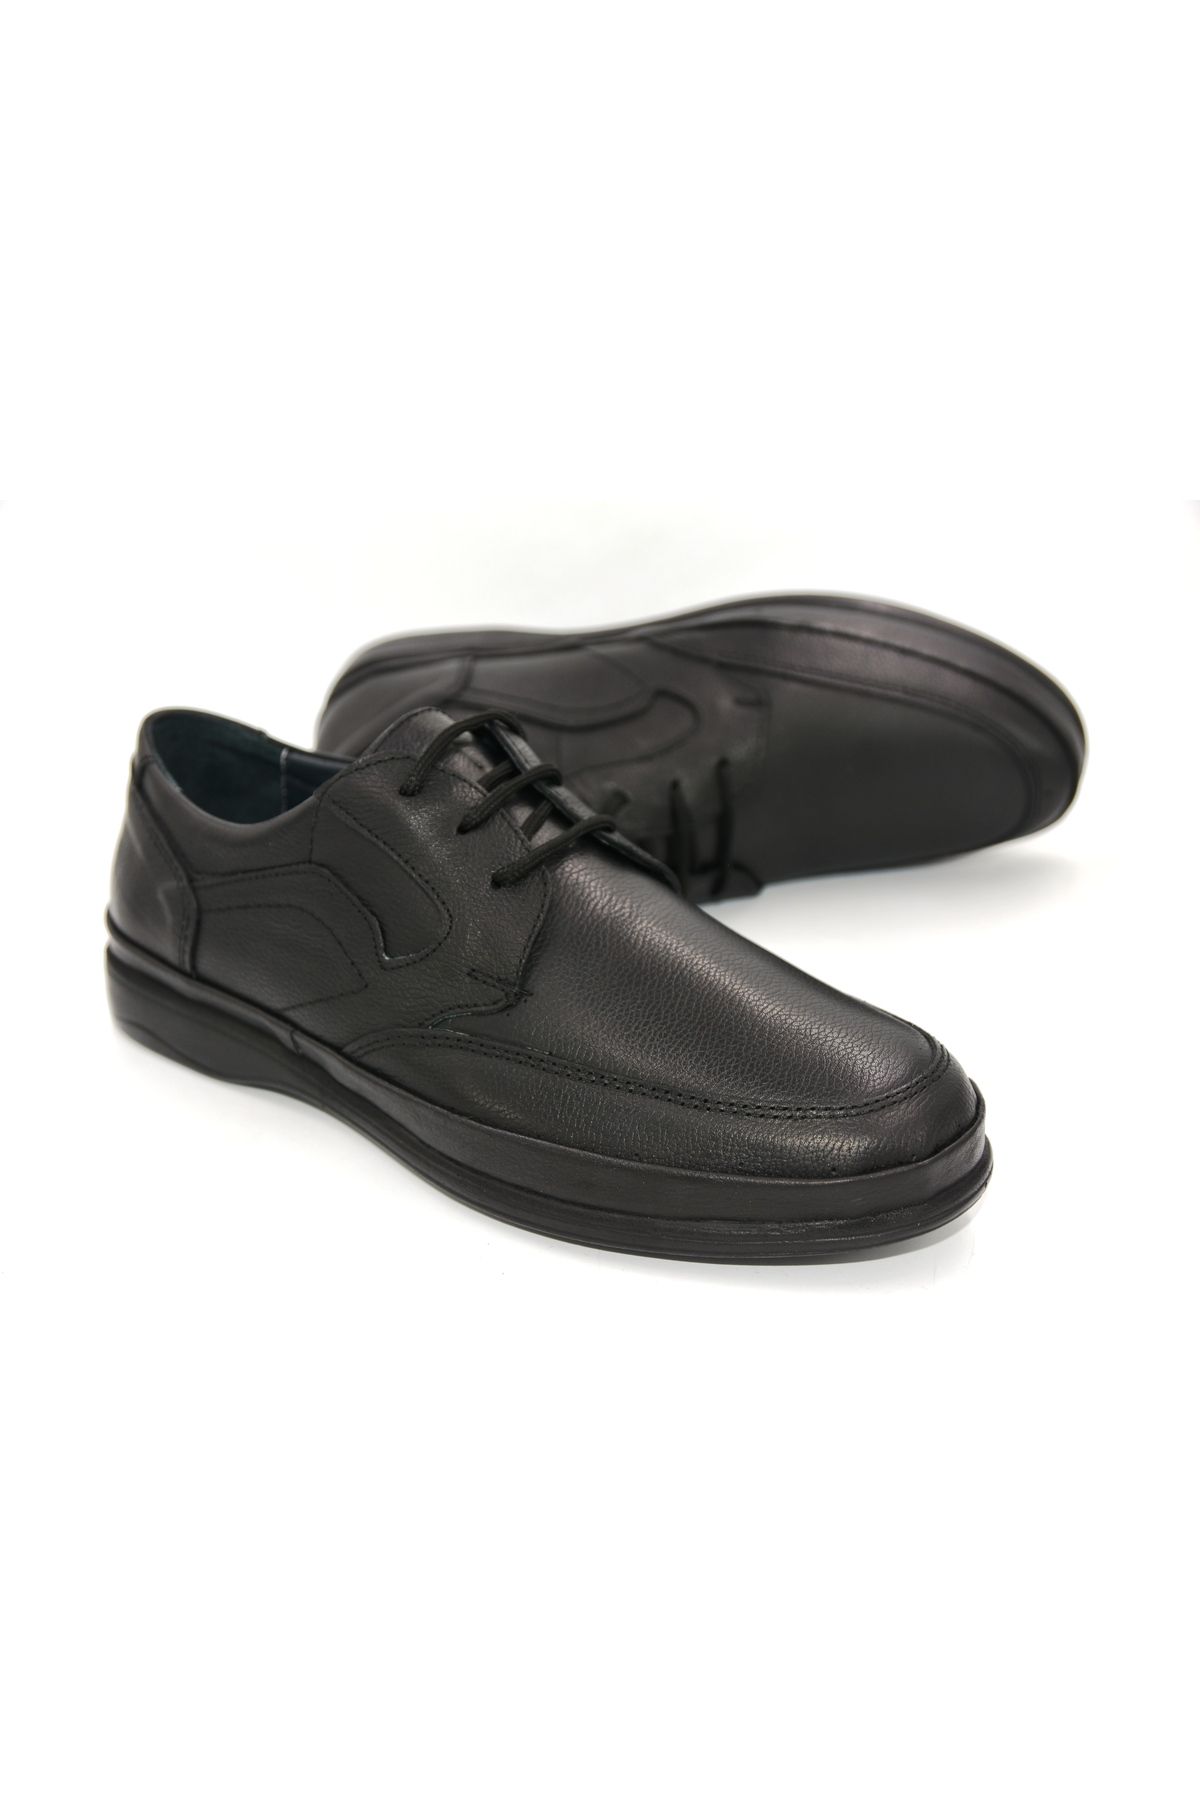 Prego (ersel) Hakiki Deri Bağcıklı Içi Jelli Comfort Erkek Günlük Ayakkabı Siyah